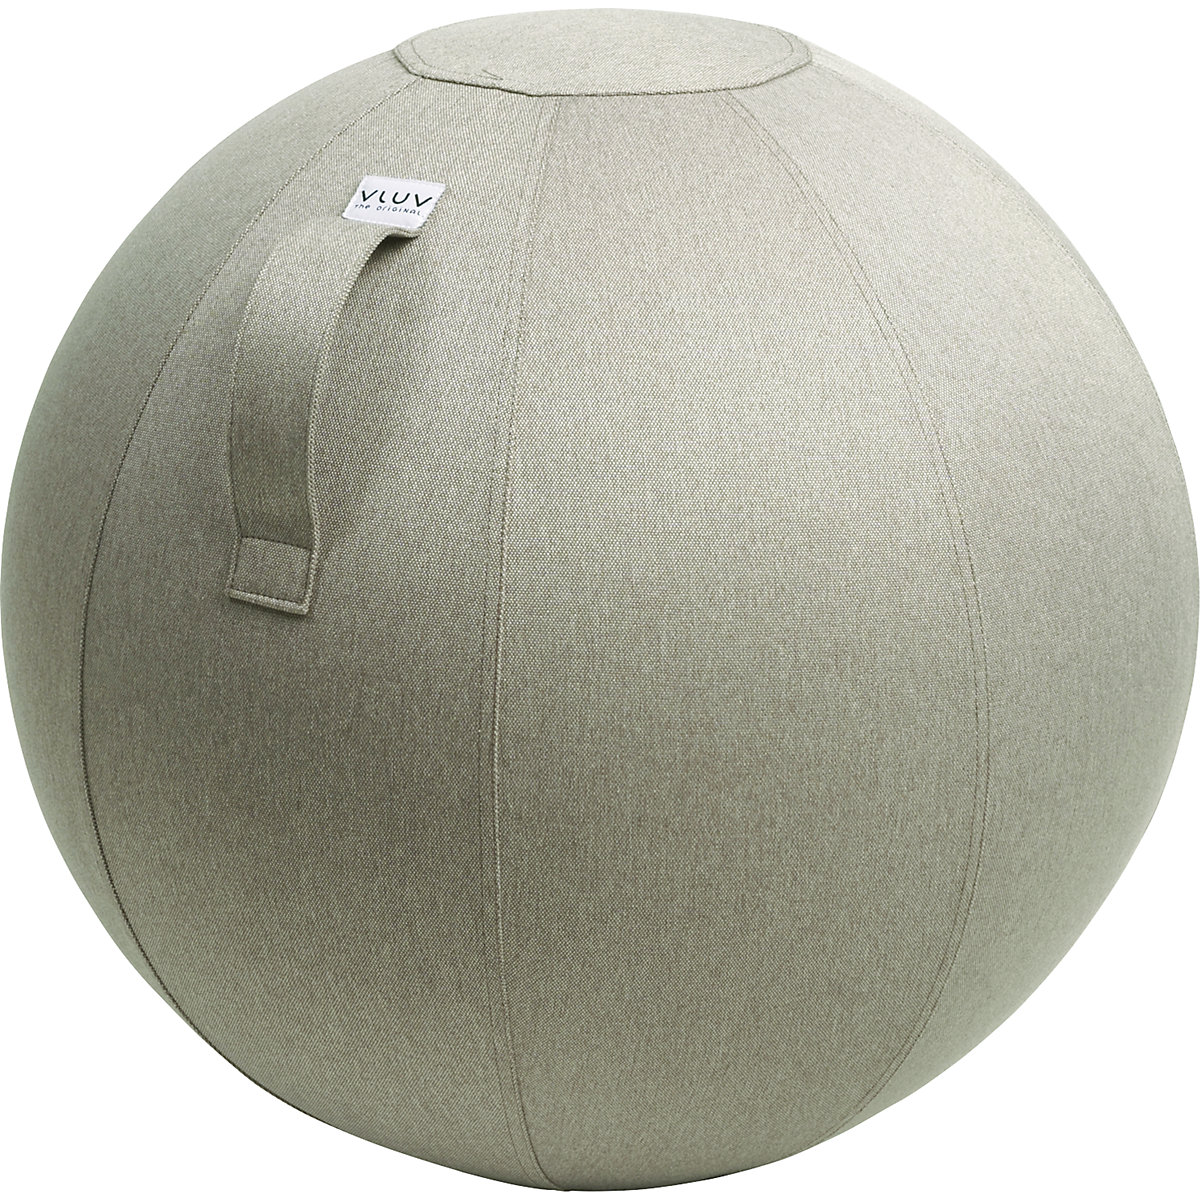 Piłka do siedzenia LEIV – VLUV, pokrowiec z tkaniny o wyglądzie płótna, 600 – 650 mm, kamienno-szara-10